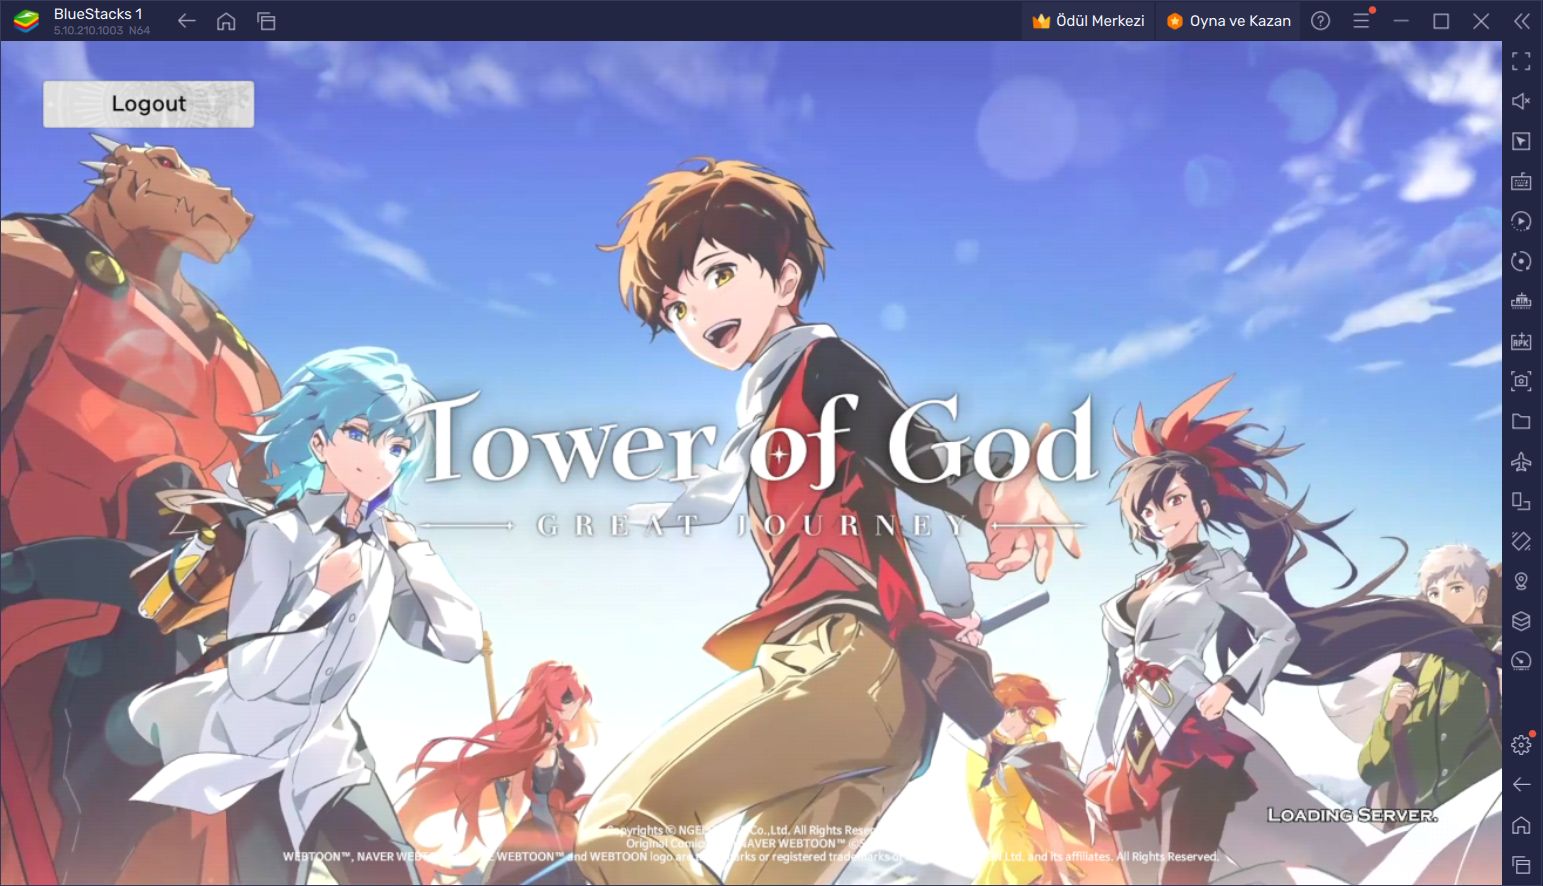 Tower of God: The Great Journey İçin Başlangıç Rehberi: Oyunun Temellerini Öğrenin